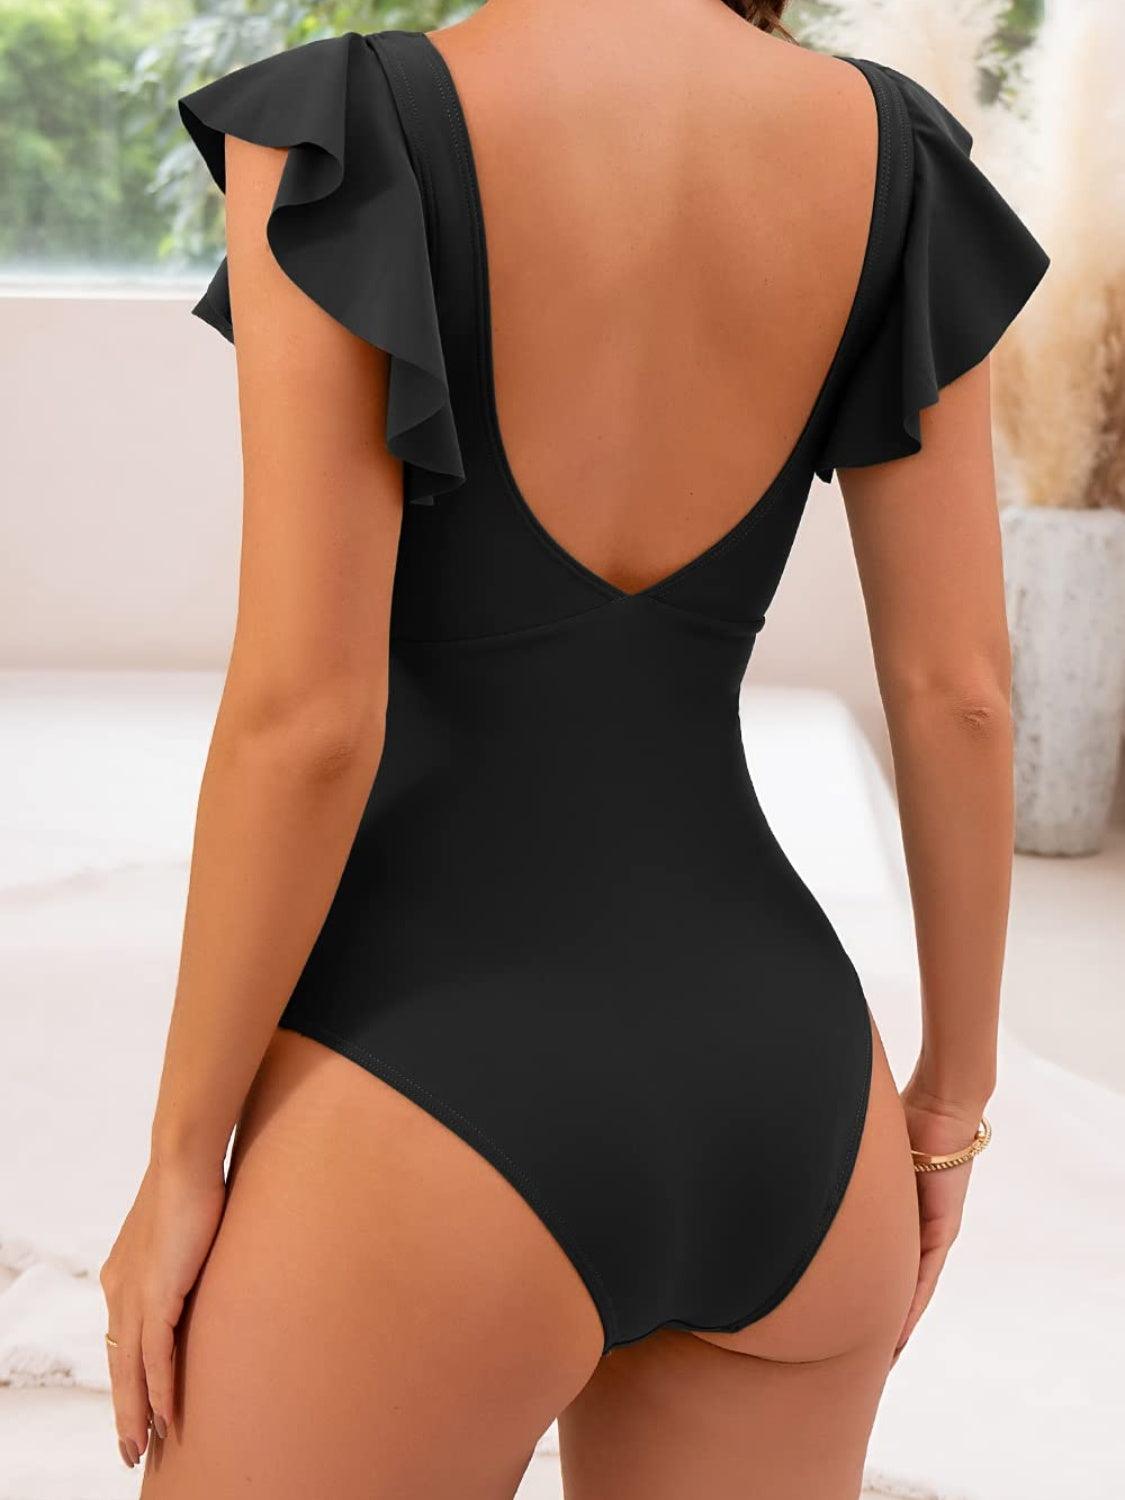 Bona Fide Fashion - Cutout Flounce Sleeve One-Piece Swimwear - Women Fashion - Bona Fide Fashion